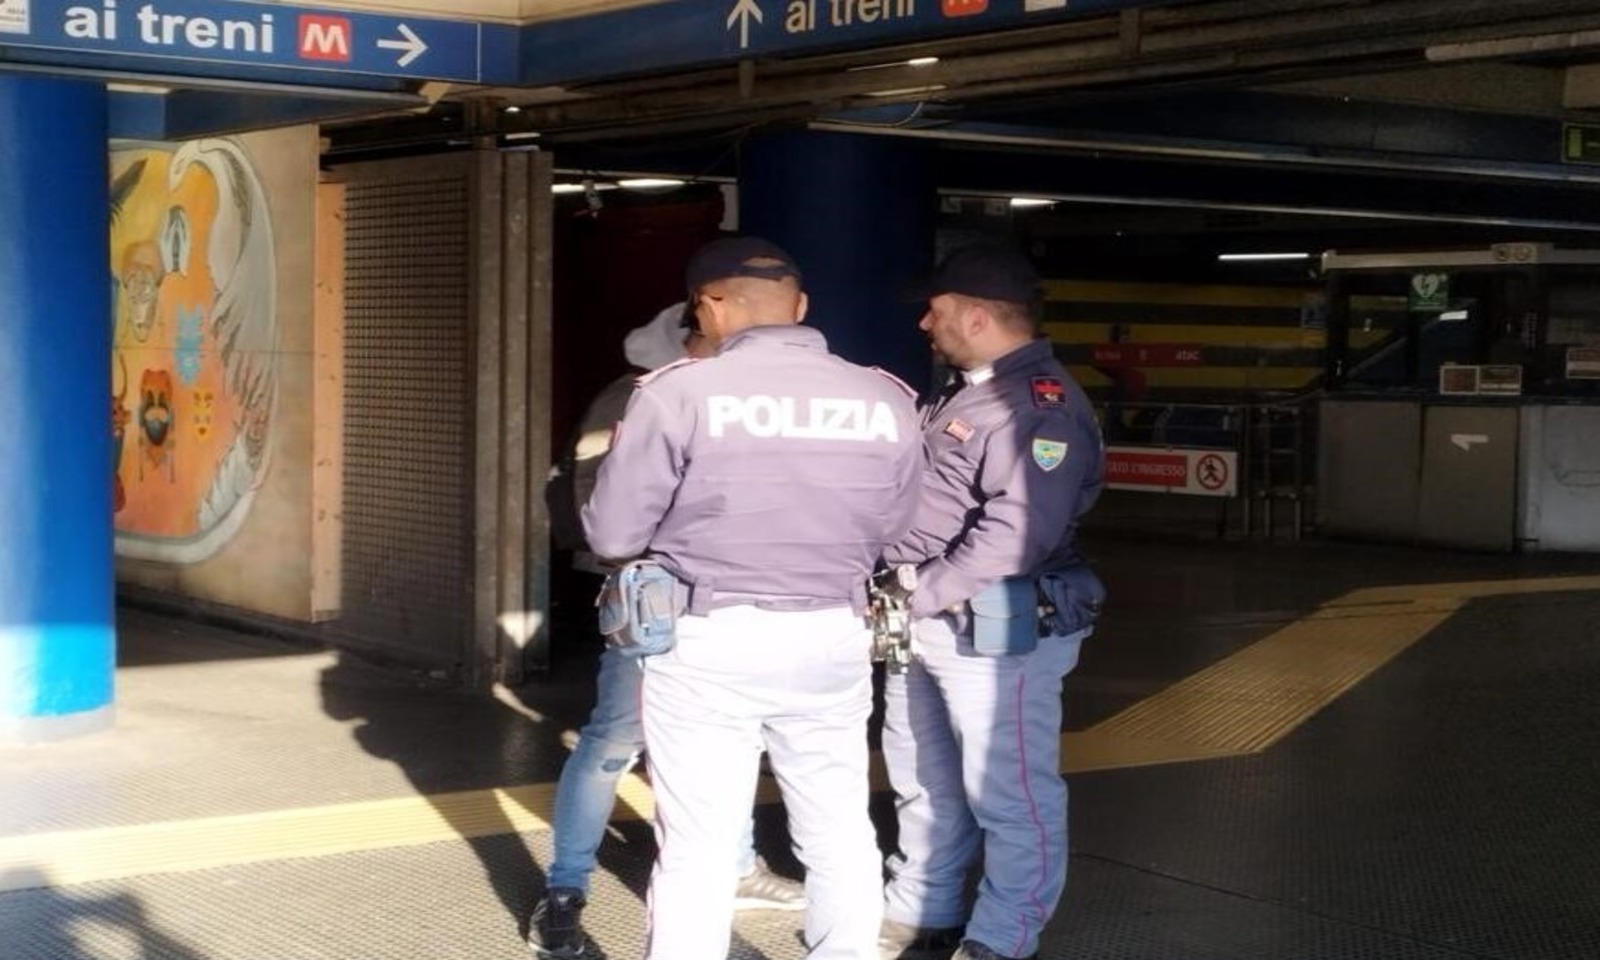 Polizia nelle metro a Roma contro borseggiatori